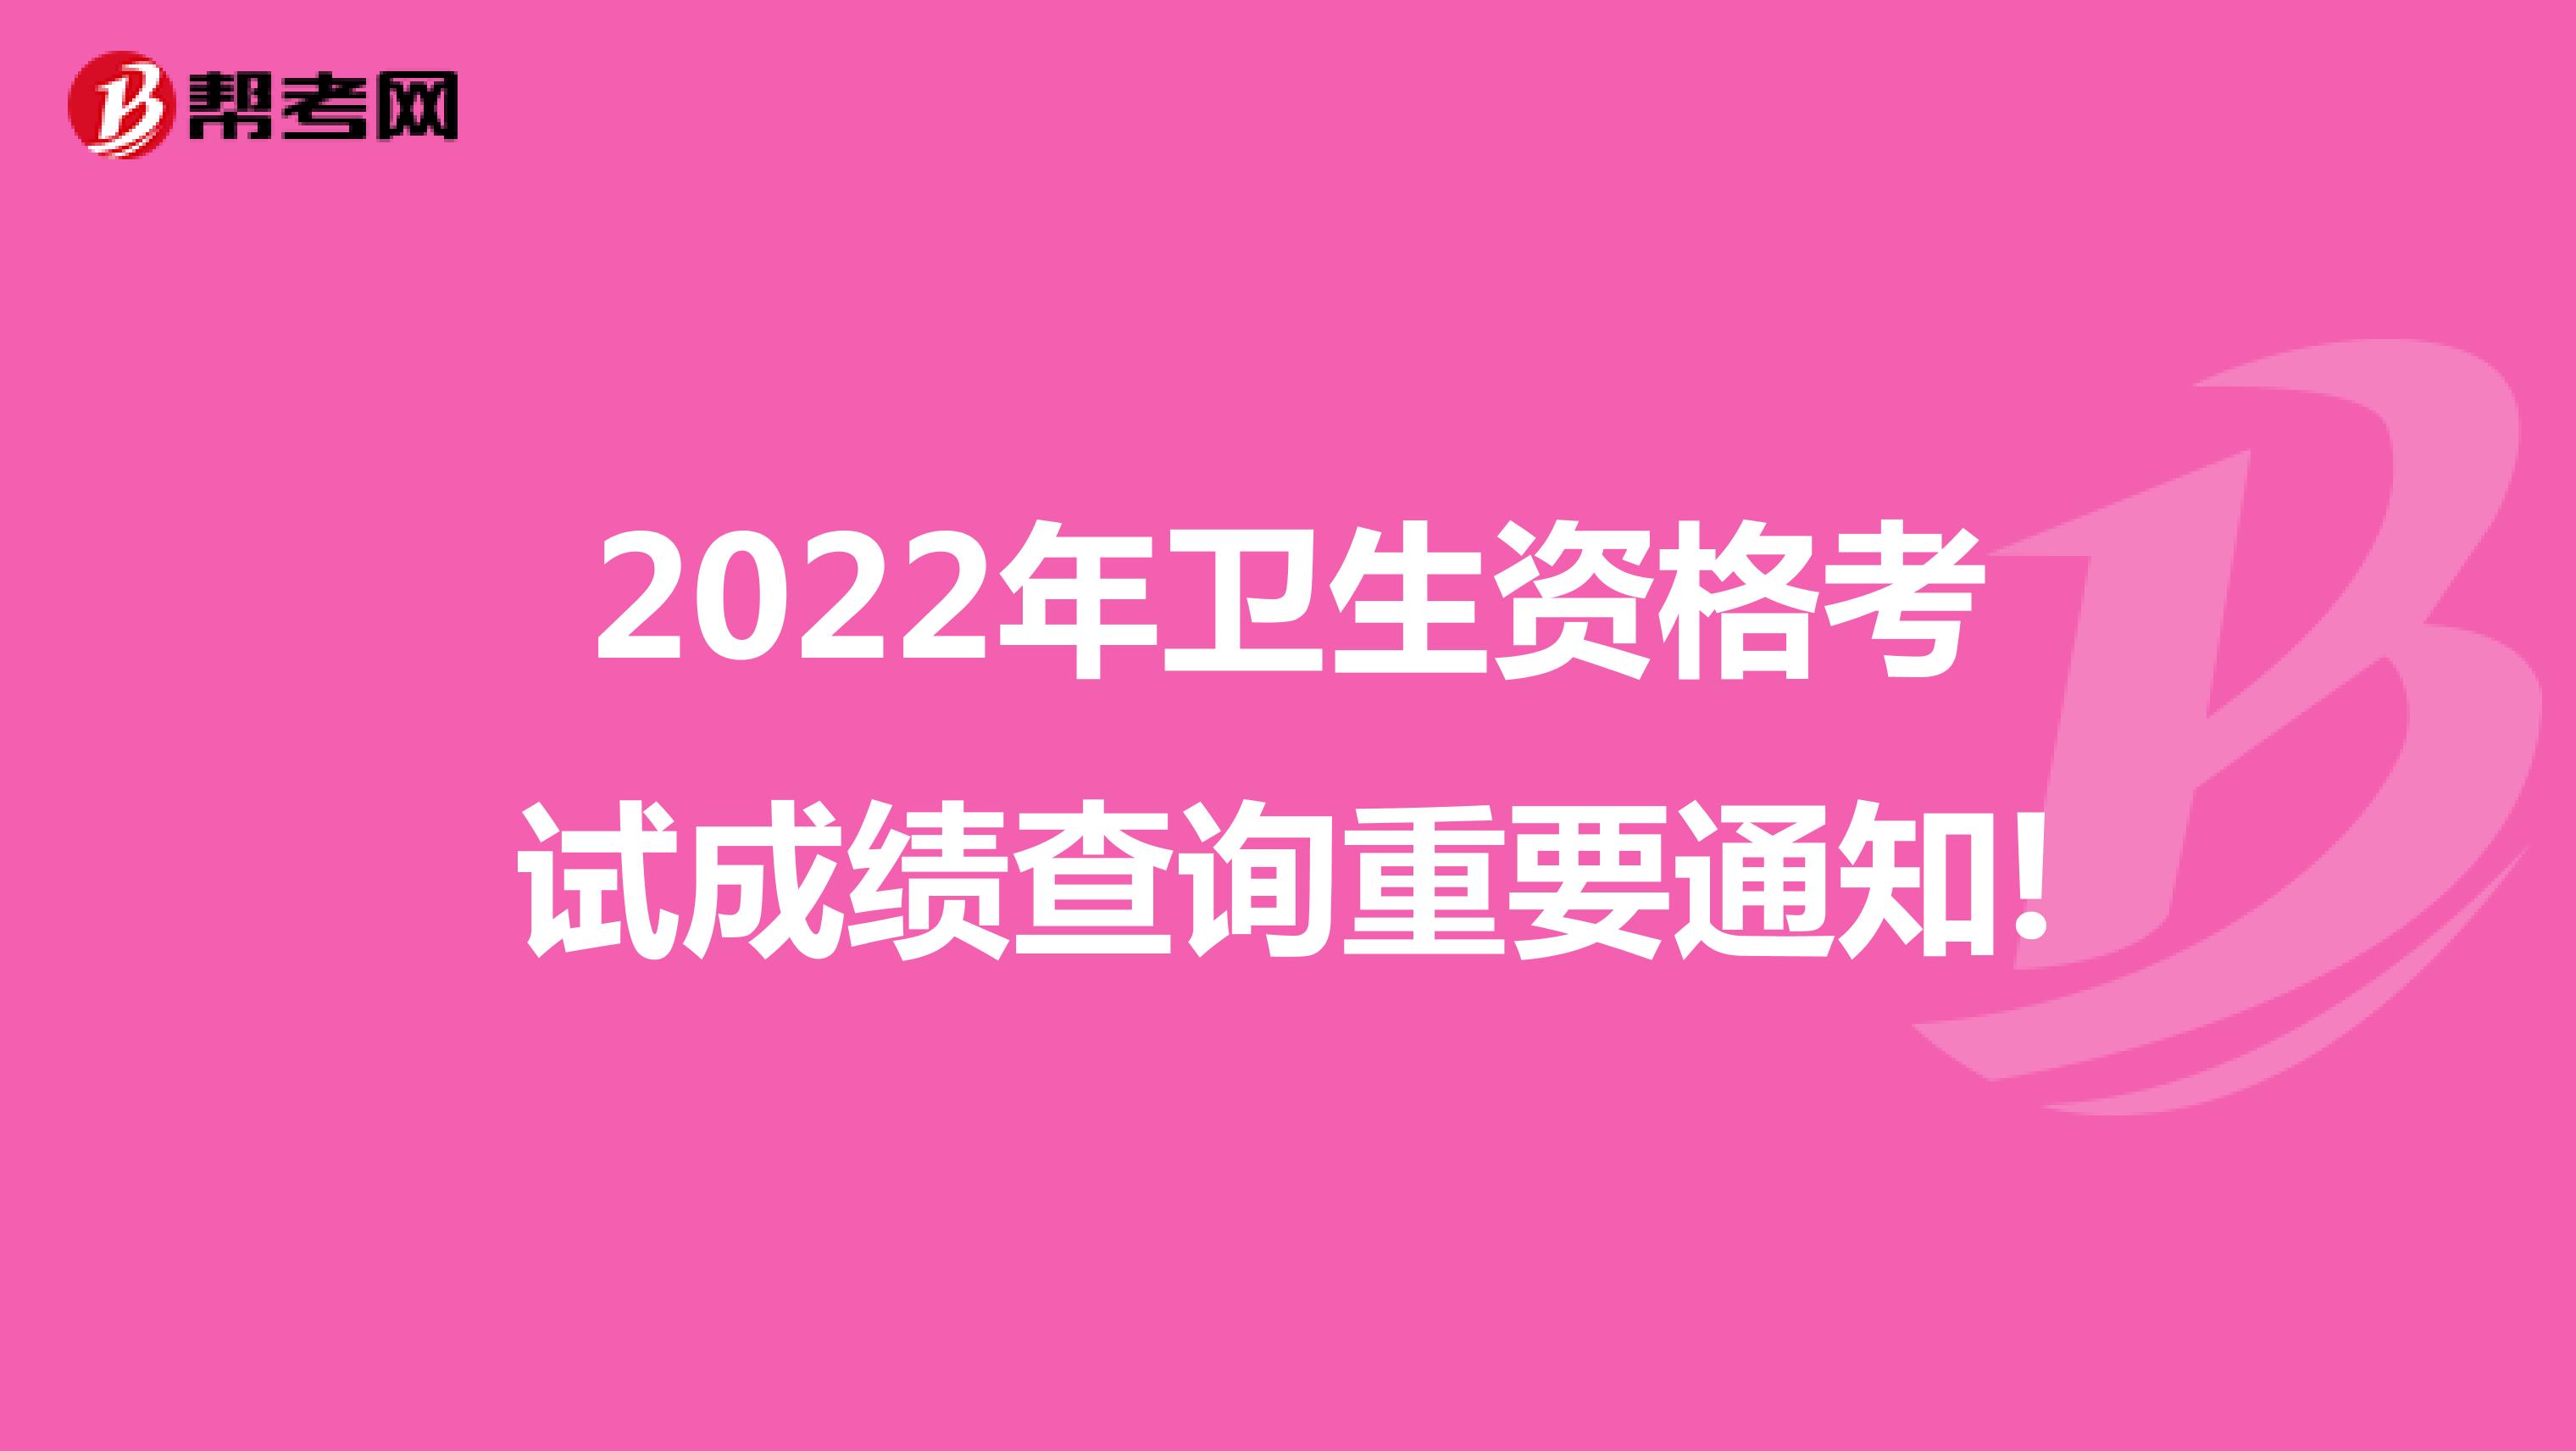 2022年卫生资格考试成绩查询重要通知!